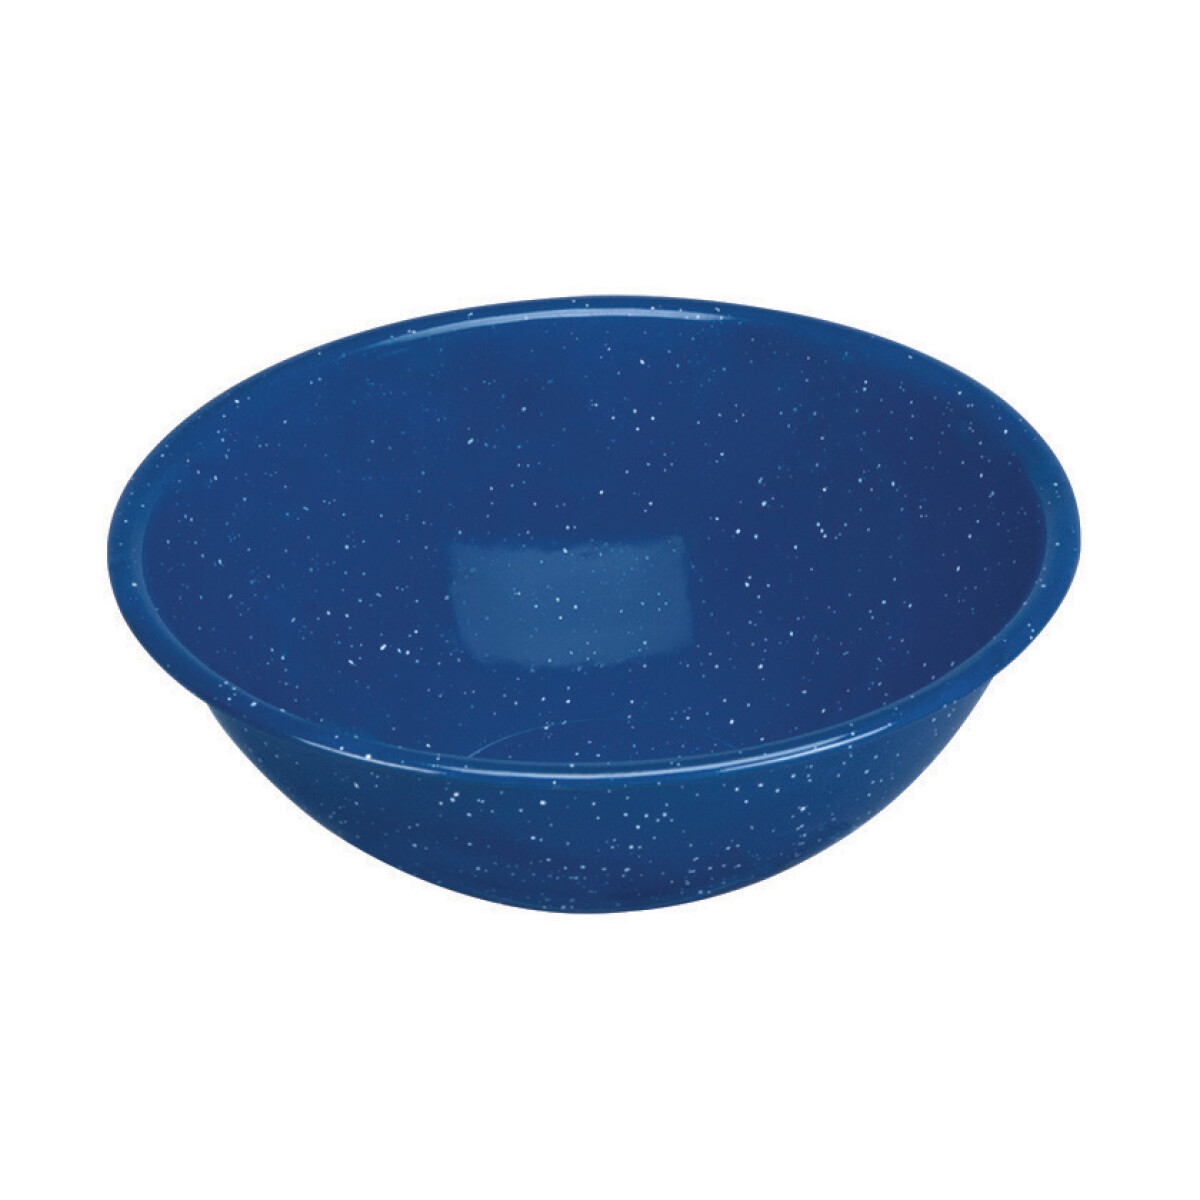 Bowl Acero Esmaltado 1000ml Azul 